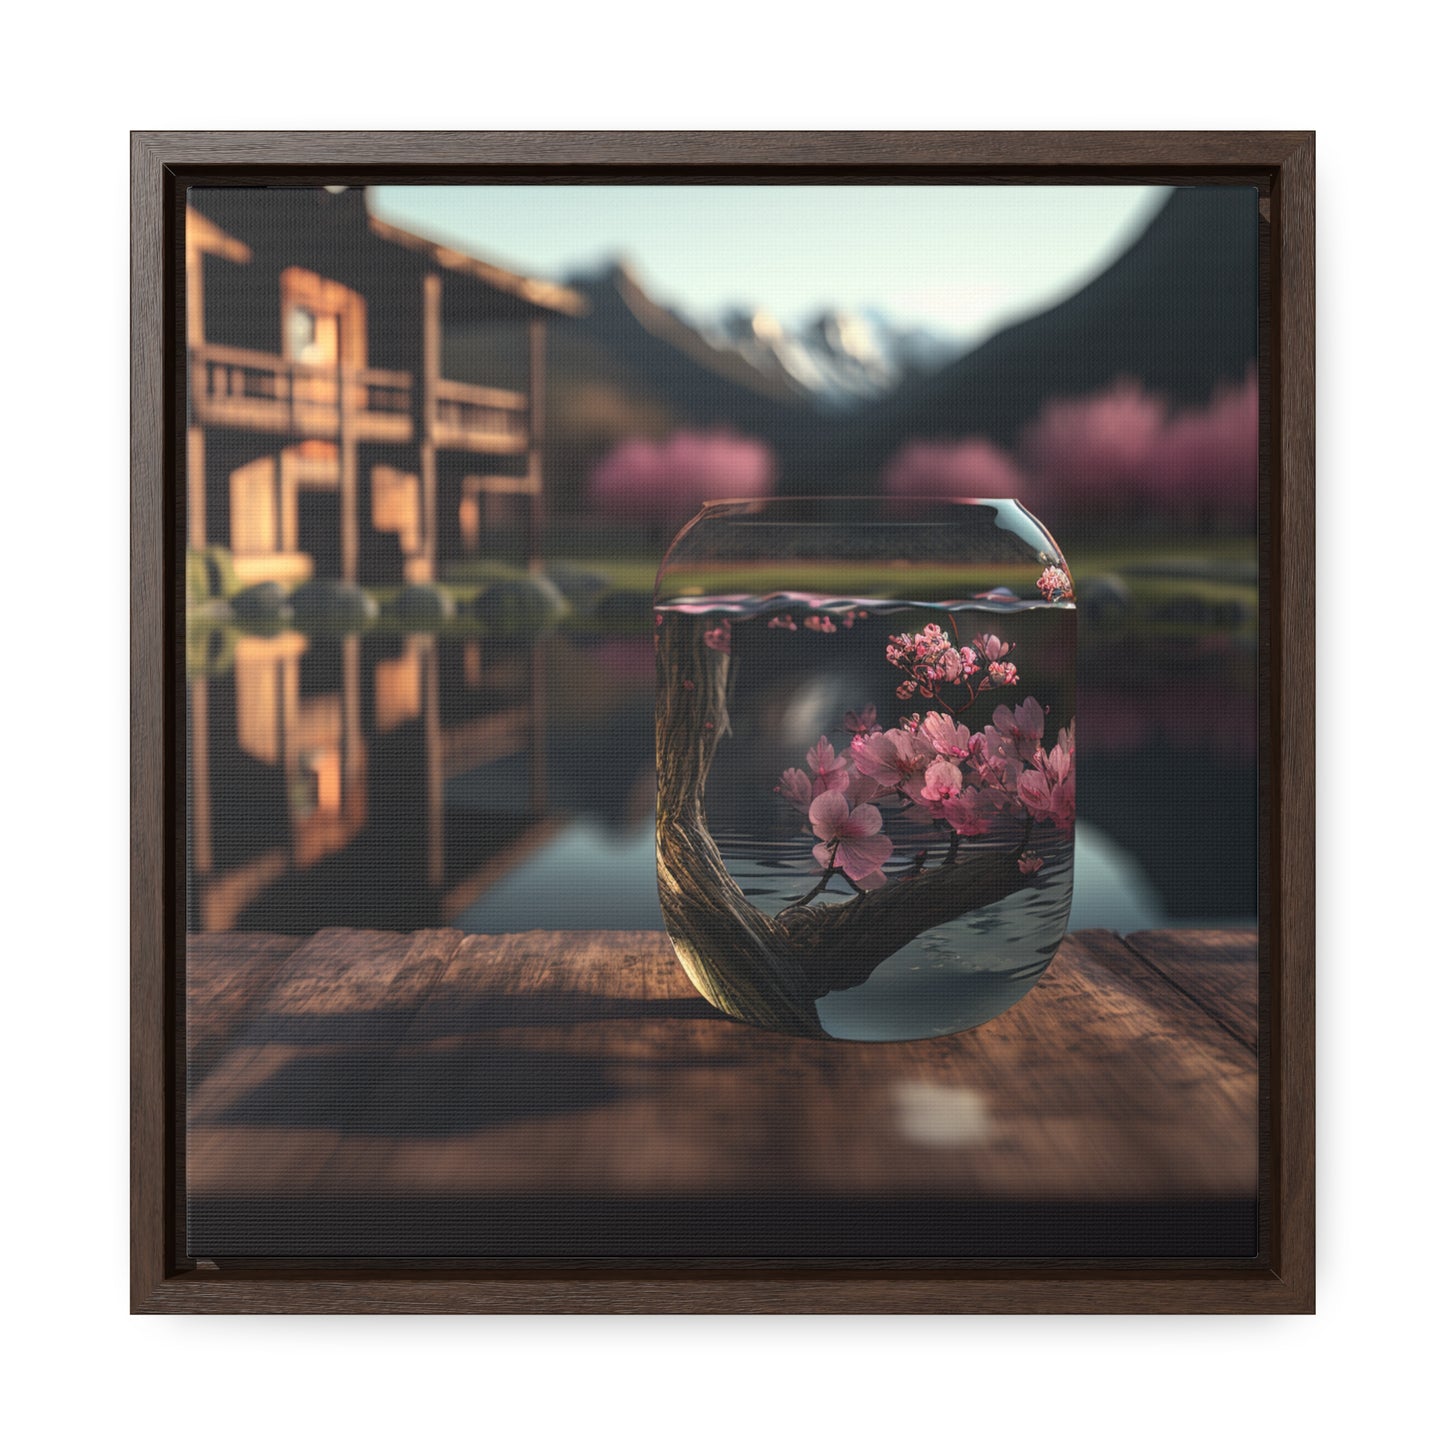 Gallery Canvas Wraps, Square Frame Cherry Blossom 3